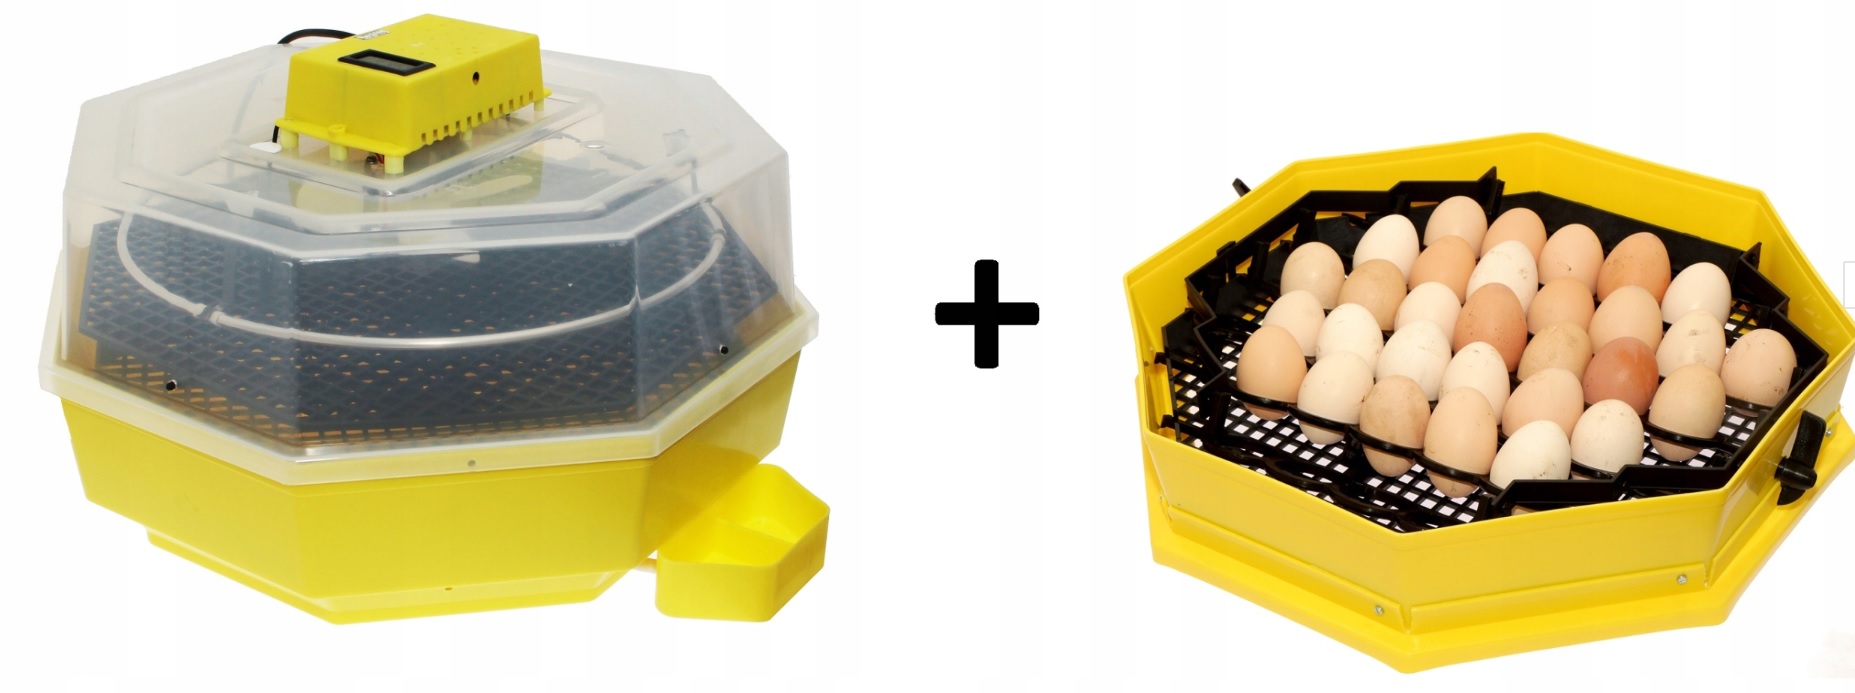 zdjecie 1 - Inkubator na 60 jaj klujnik wyświetlacz + GRATIS moduł 